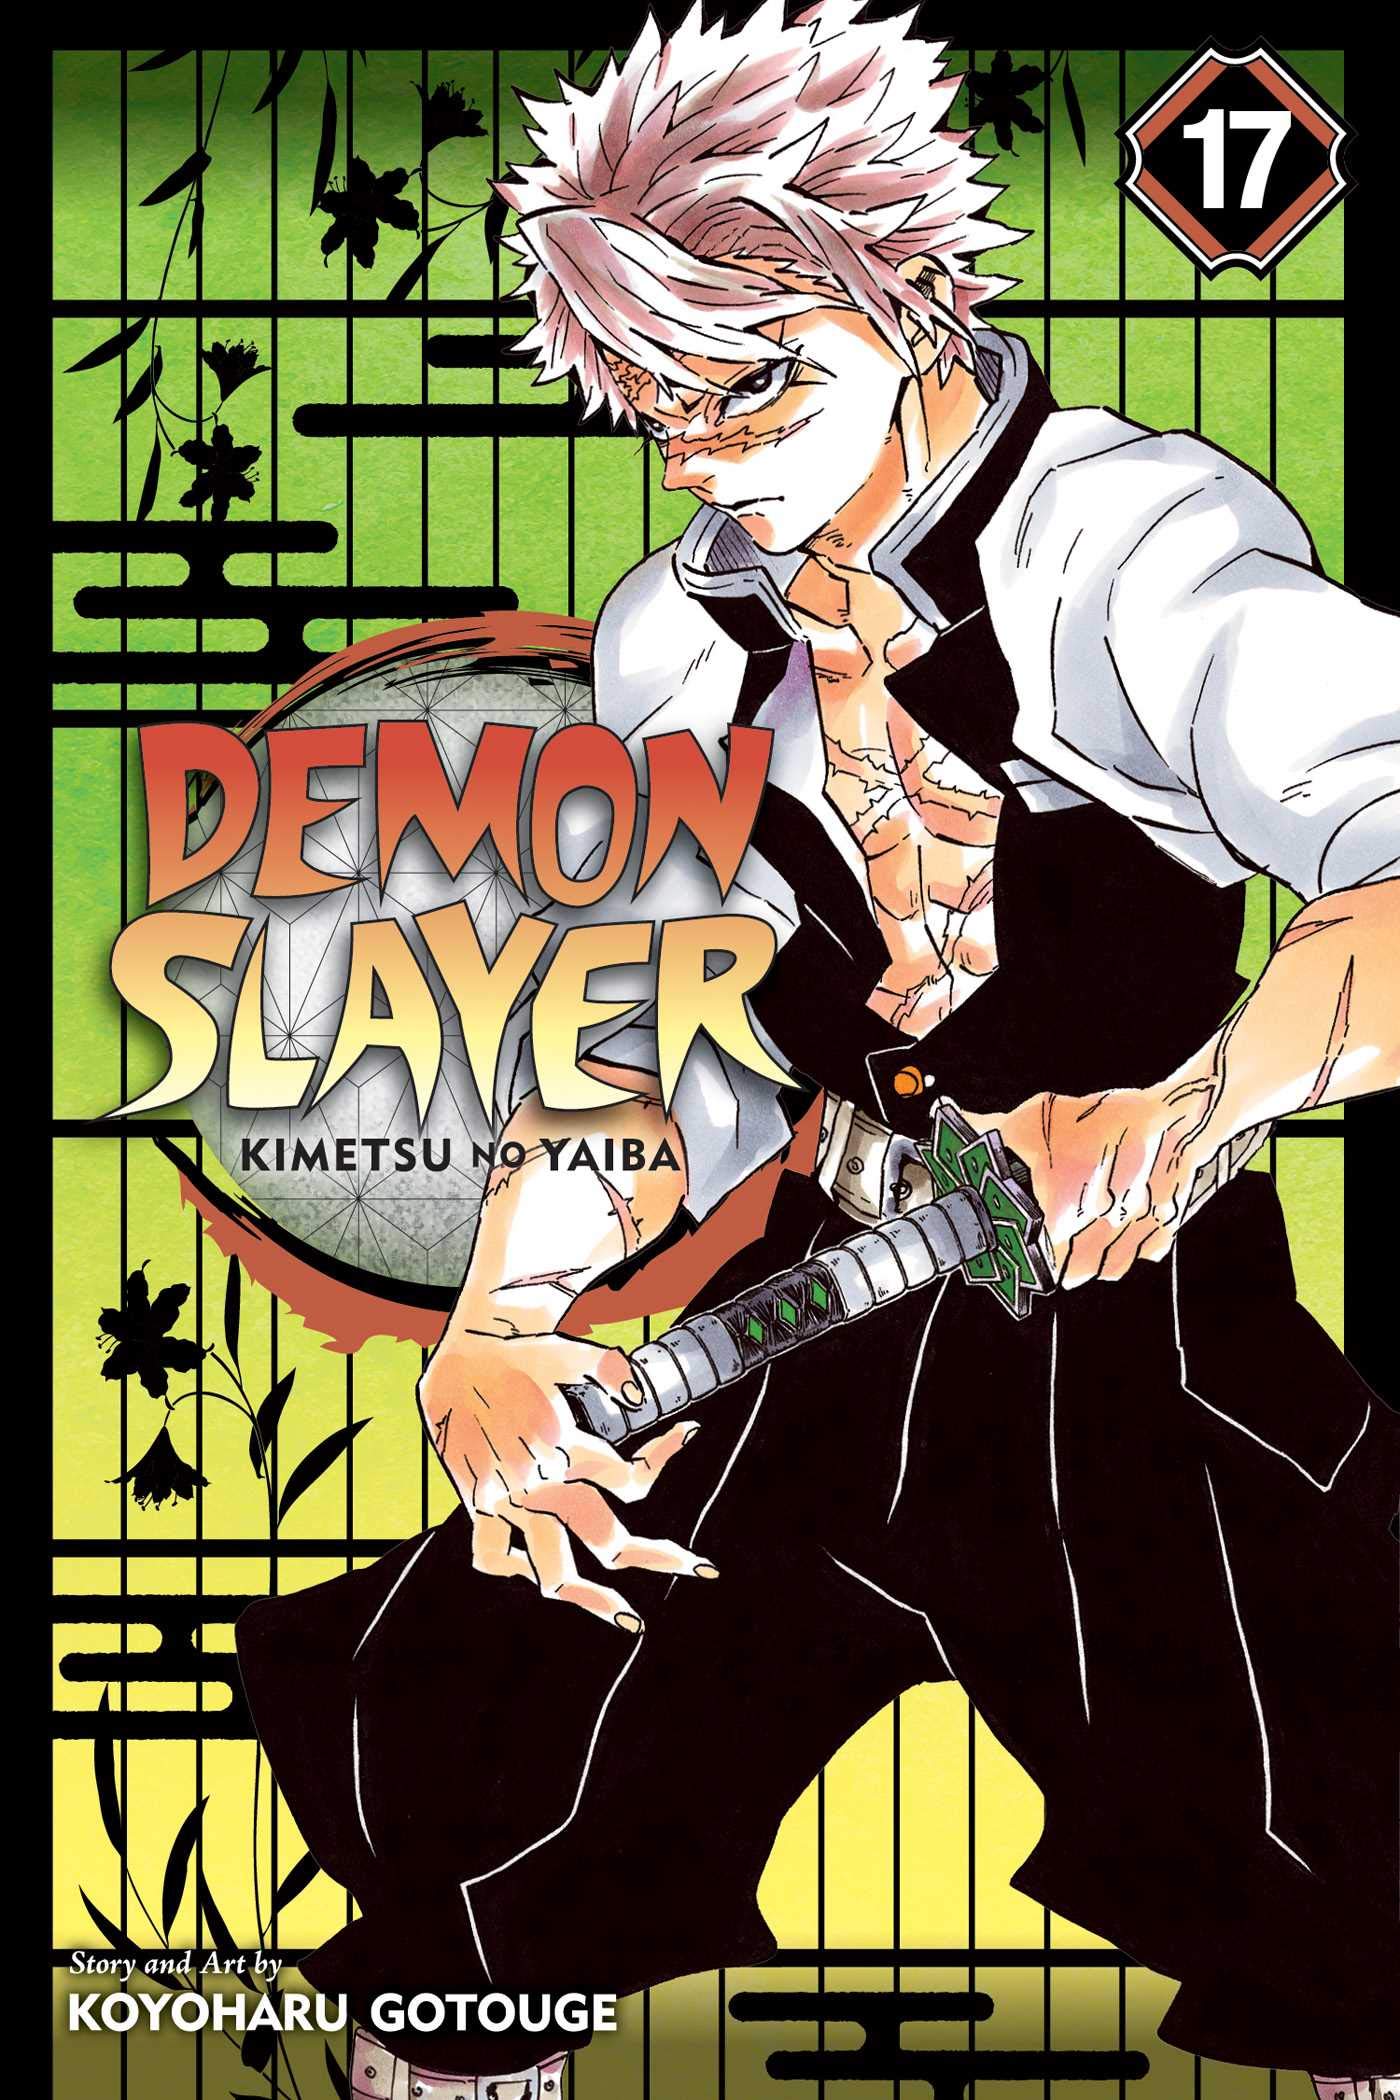 Demon Slayer: Kimetsu no Yaiba - Volume 17 | Koyoharu Gotouge